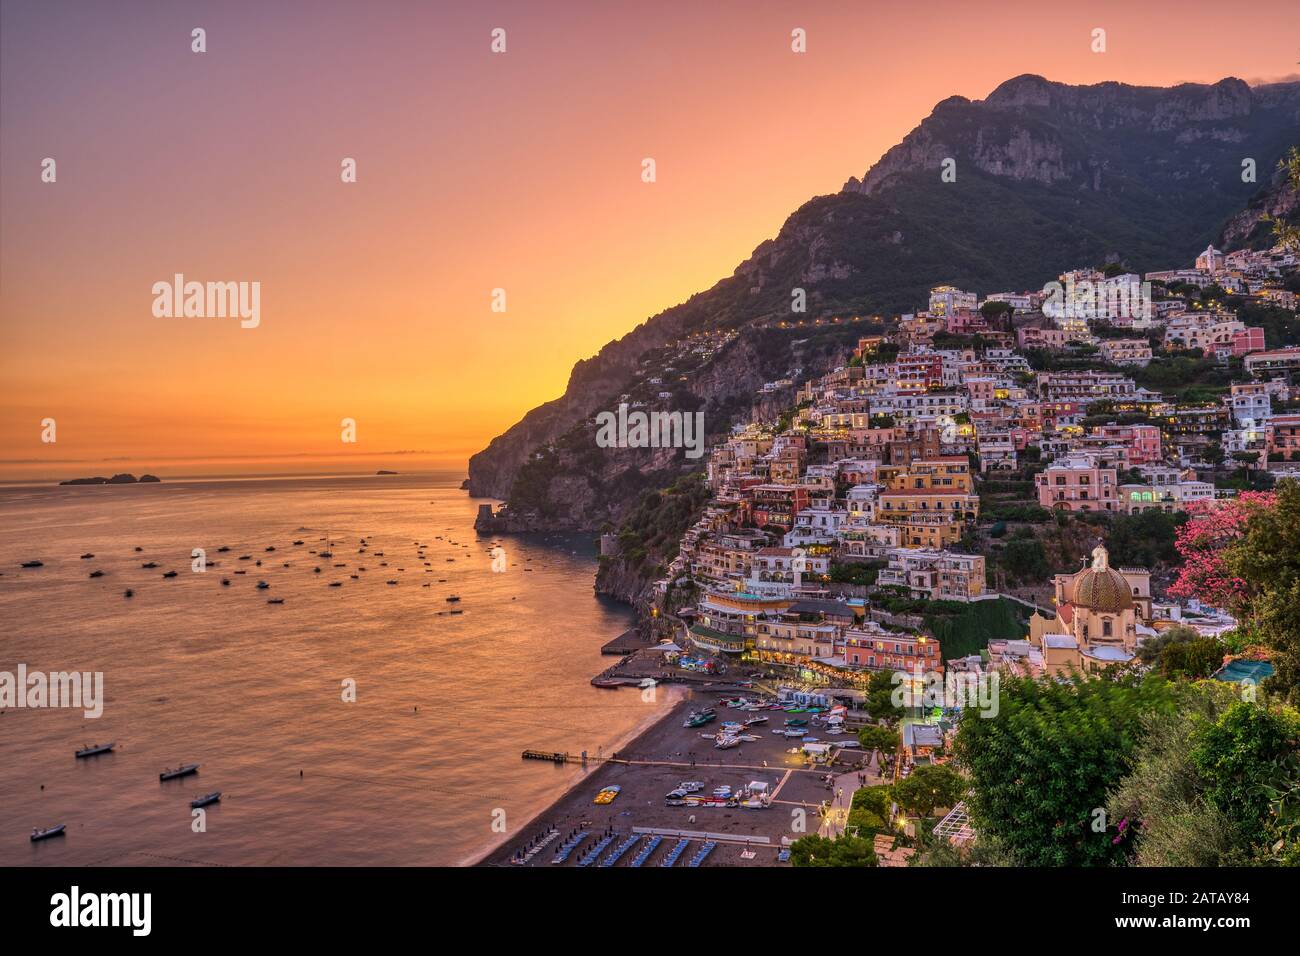 The famous village of Positano on the italian Amalfi coast after sunset Stock Photo